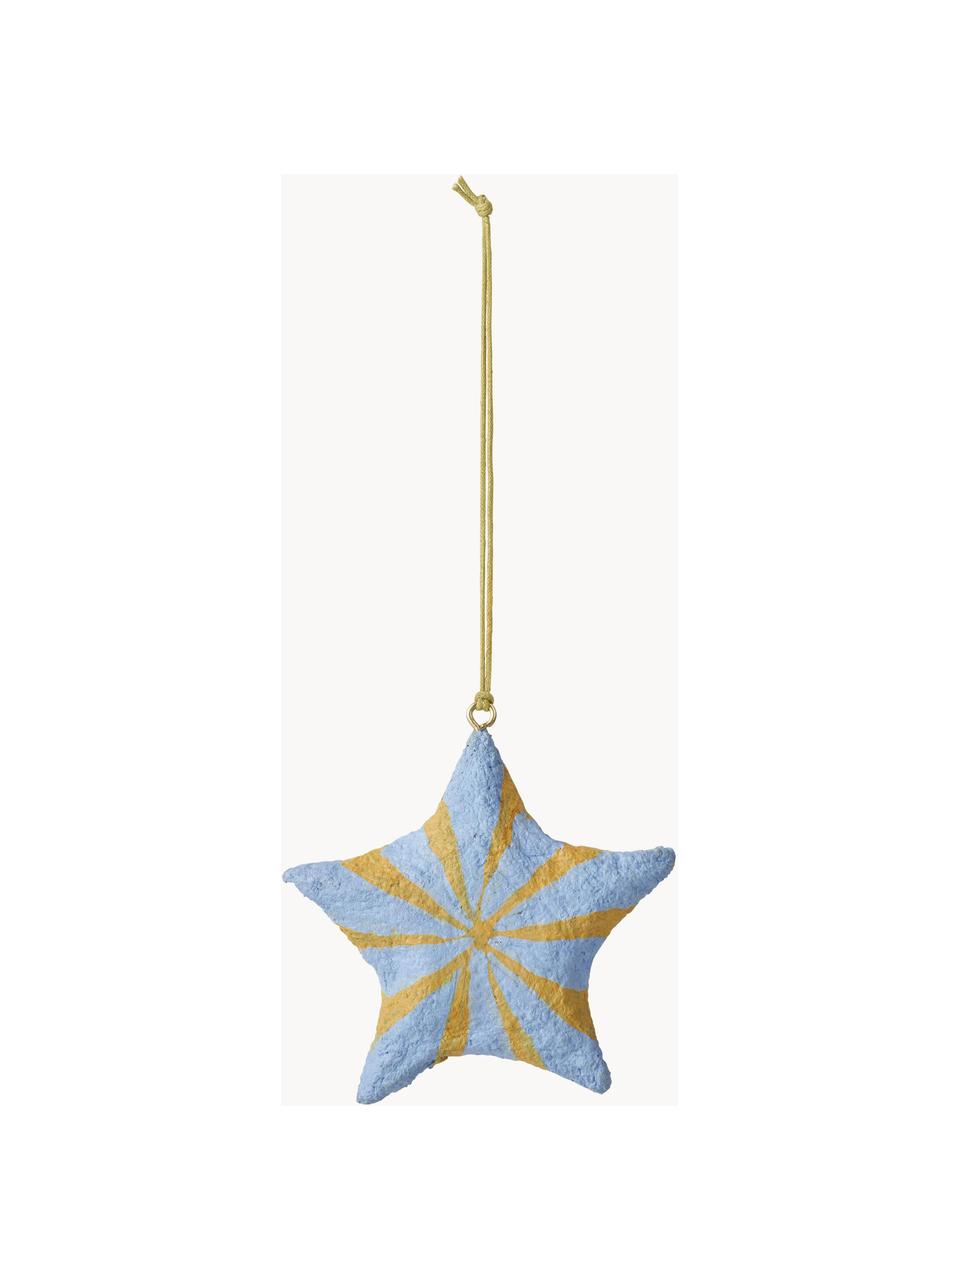 Adornos navideños estrella Bomuld, 4 uds., Tejido de algodón, Azul, amarillo, Ø 9 x Al 9 cm